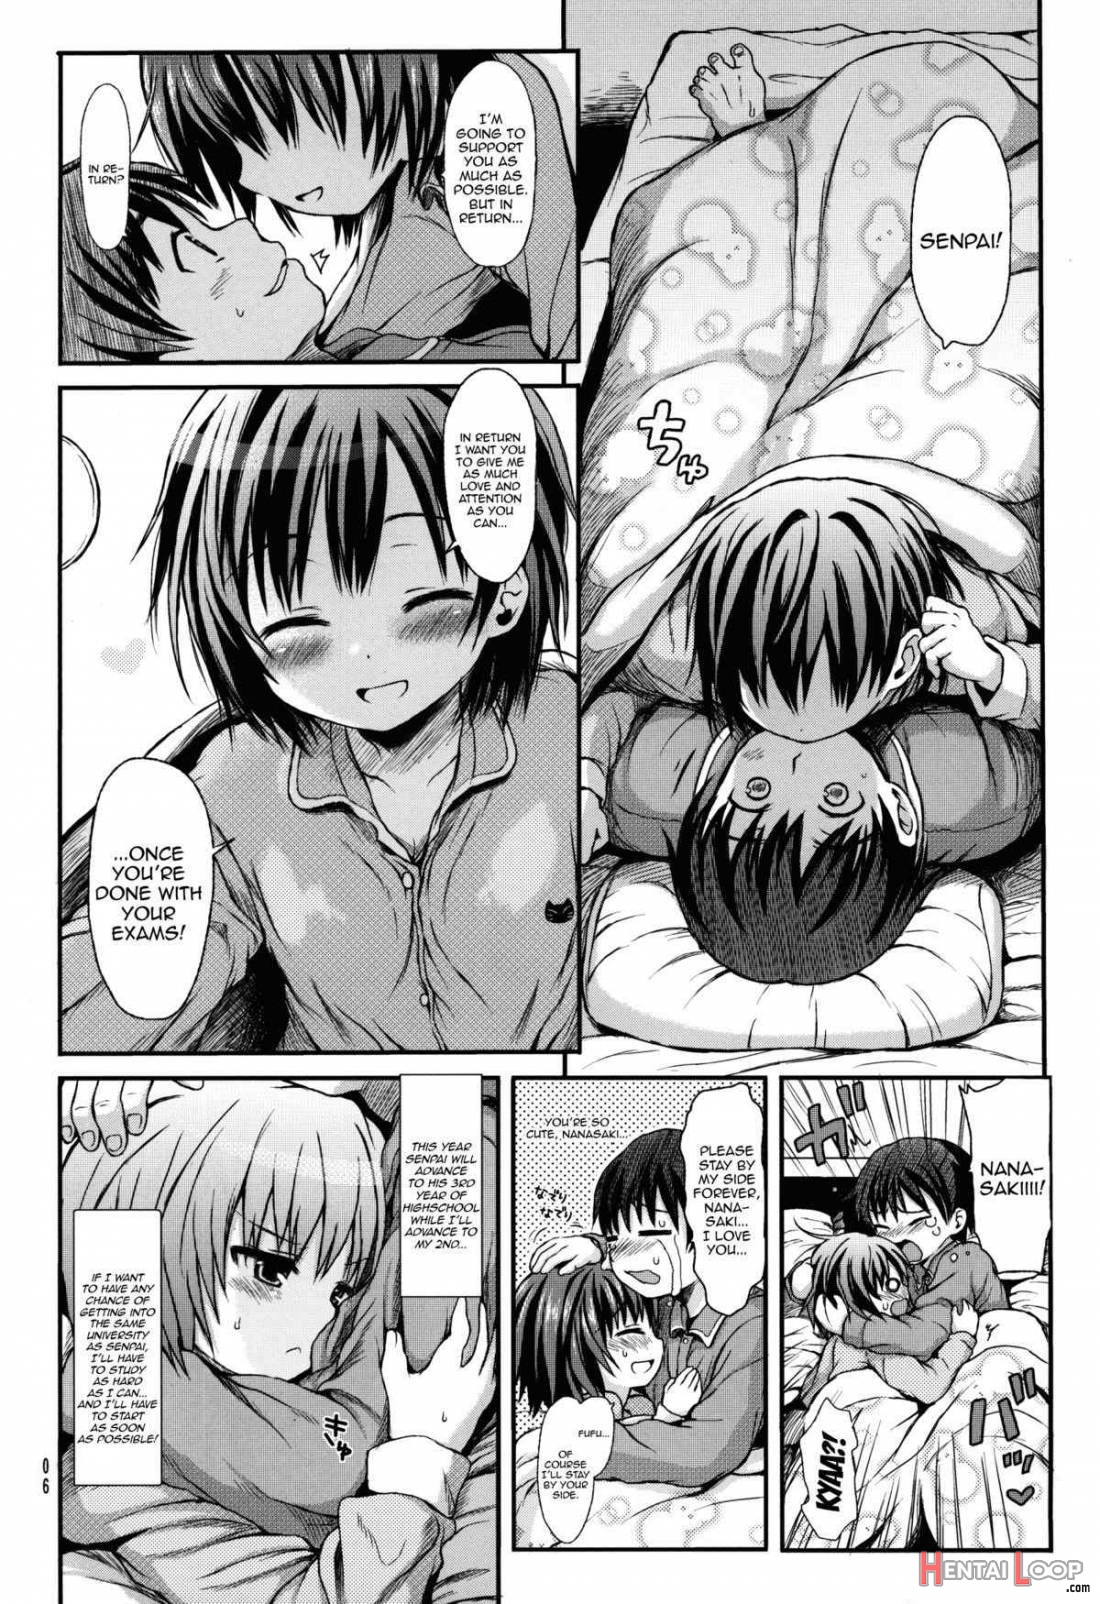 Nanasaki After page 5